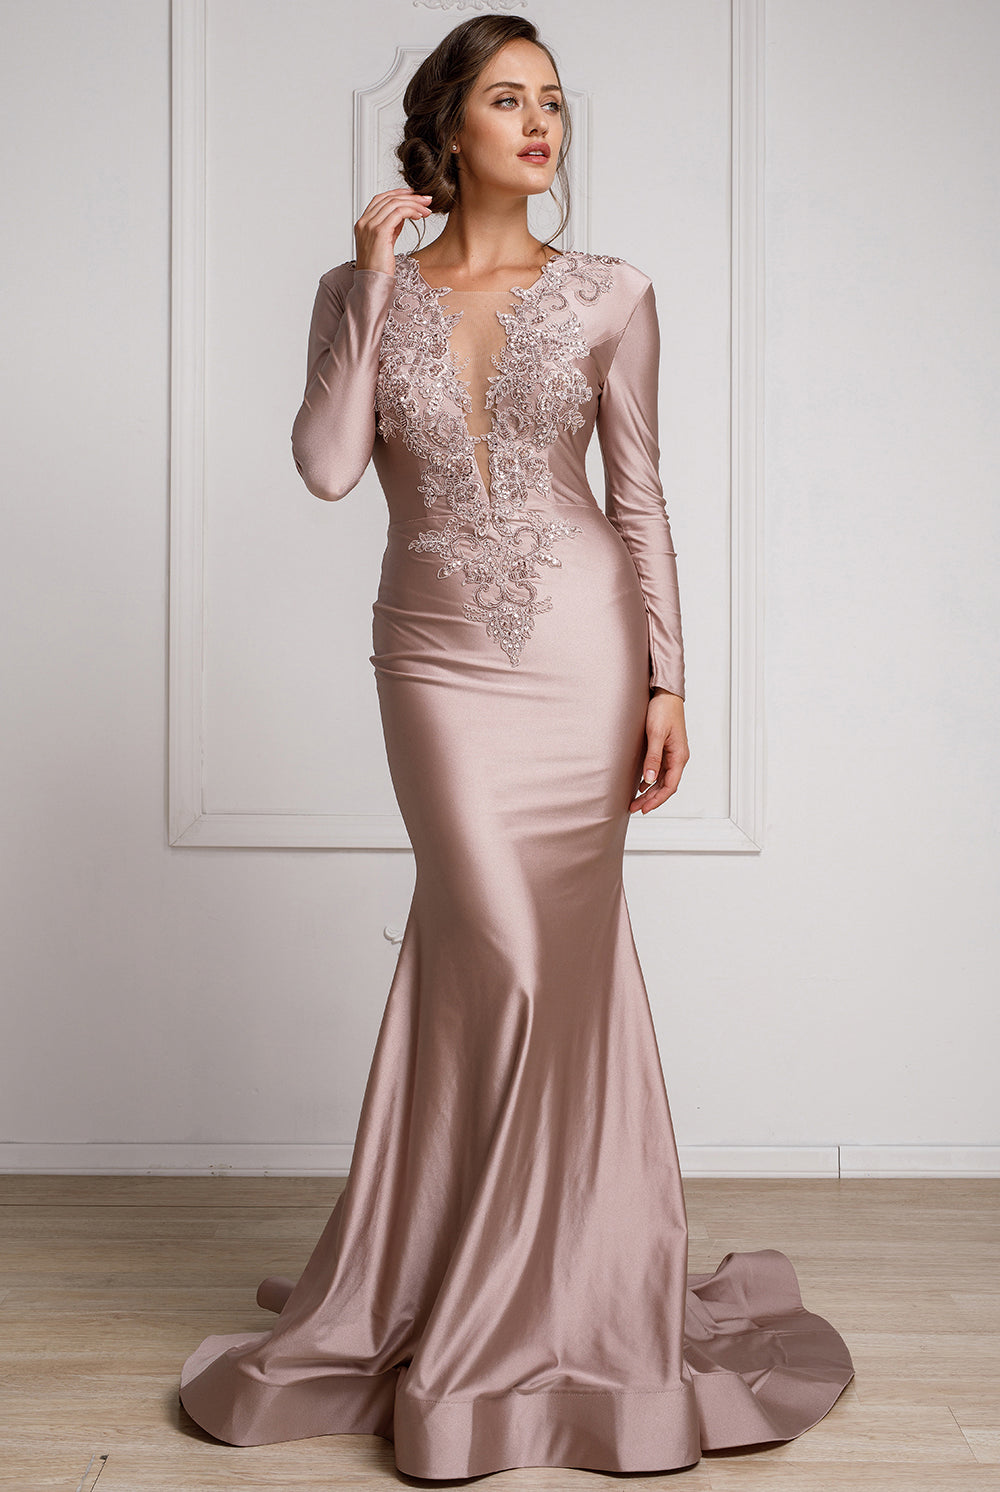 Illusion Deep V-Neck Long Sleeves Mermaid Long Prom Dress AC382-Prom Dress-smcfashion.com